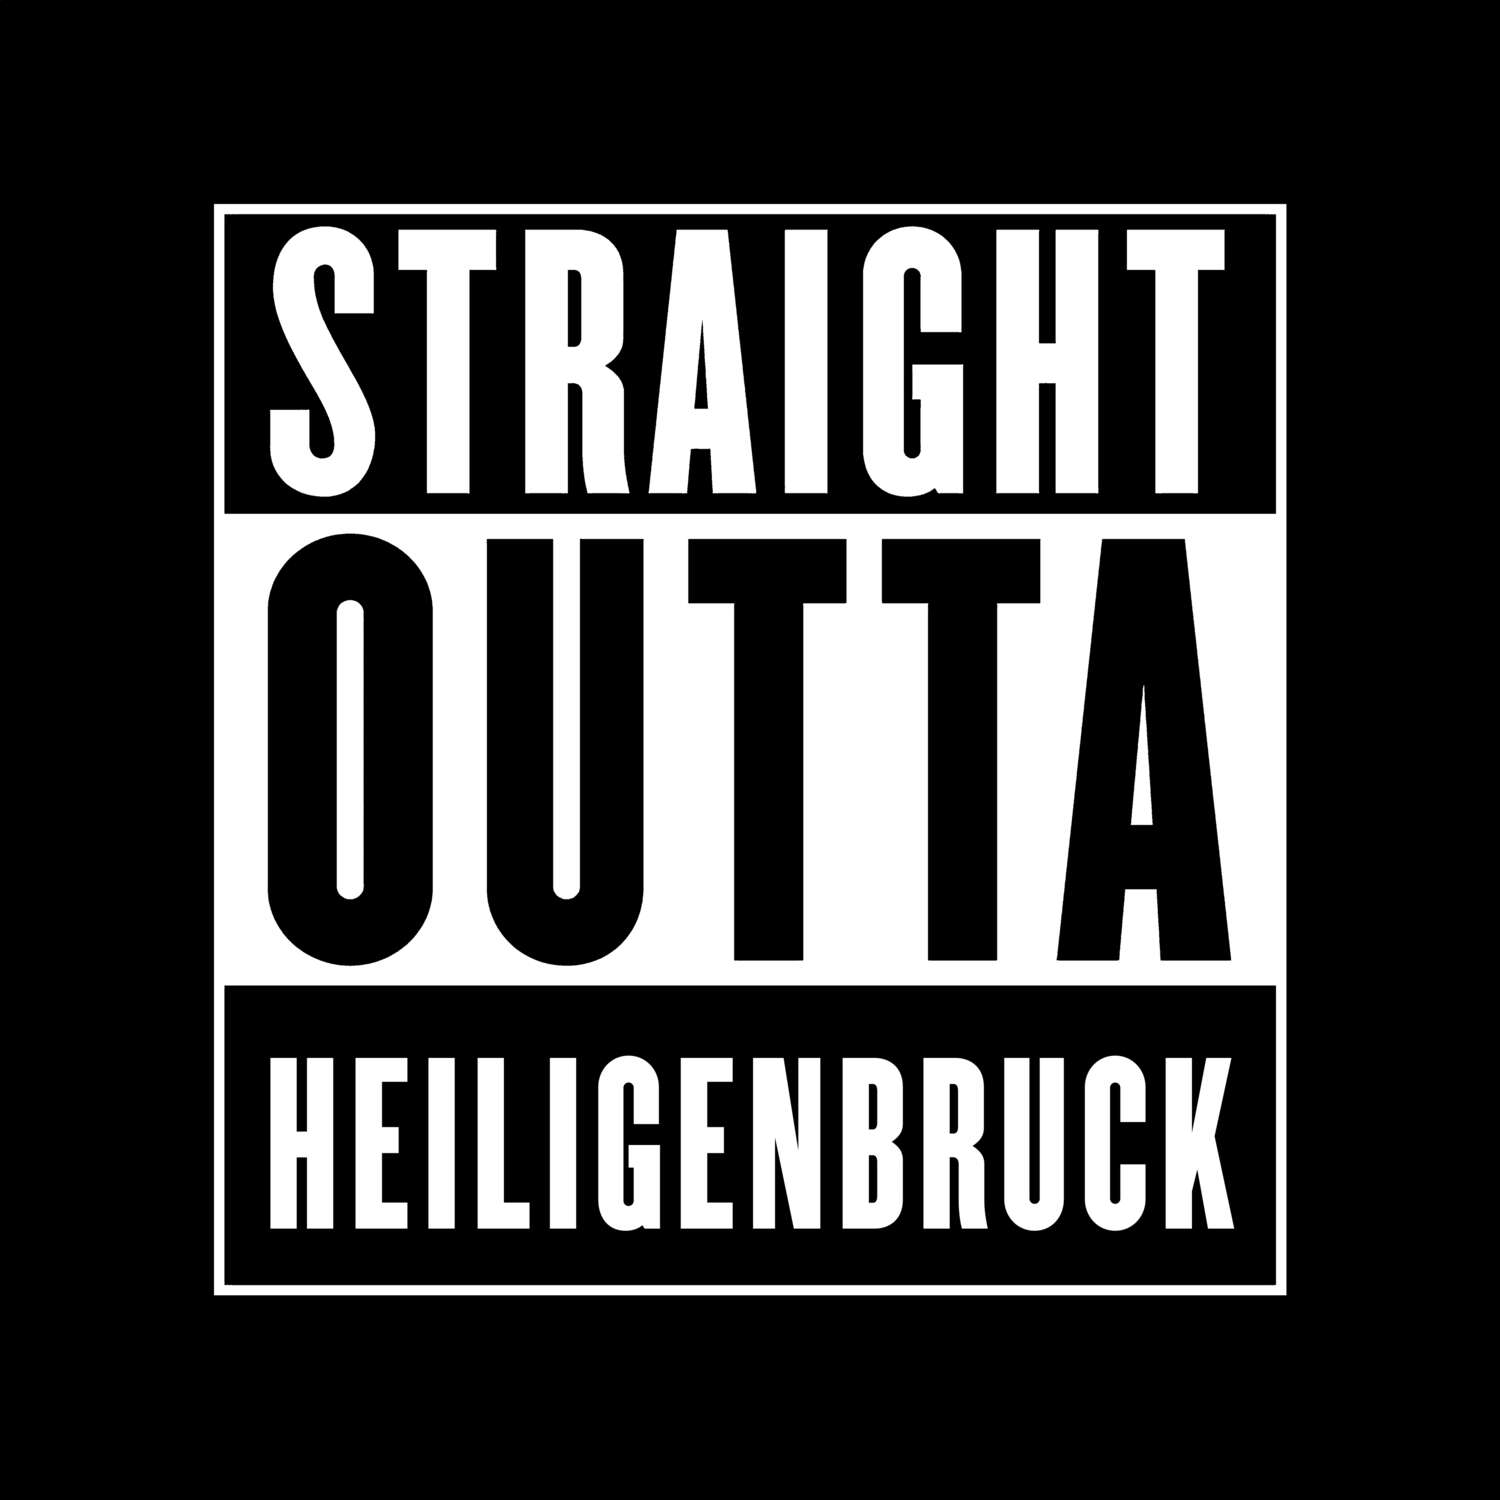 Heiligenbruck T-Shirt »Straight Outta«